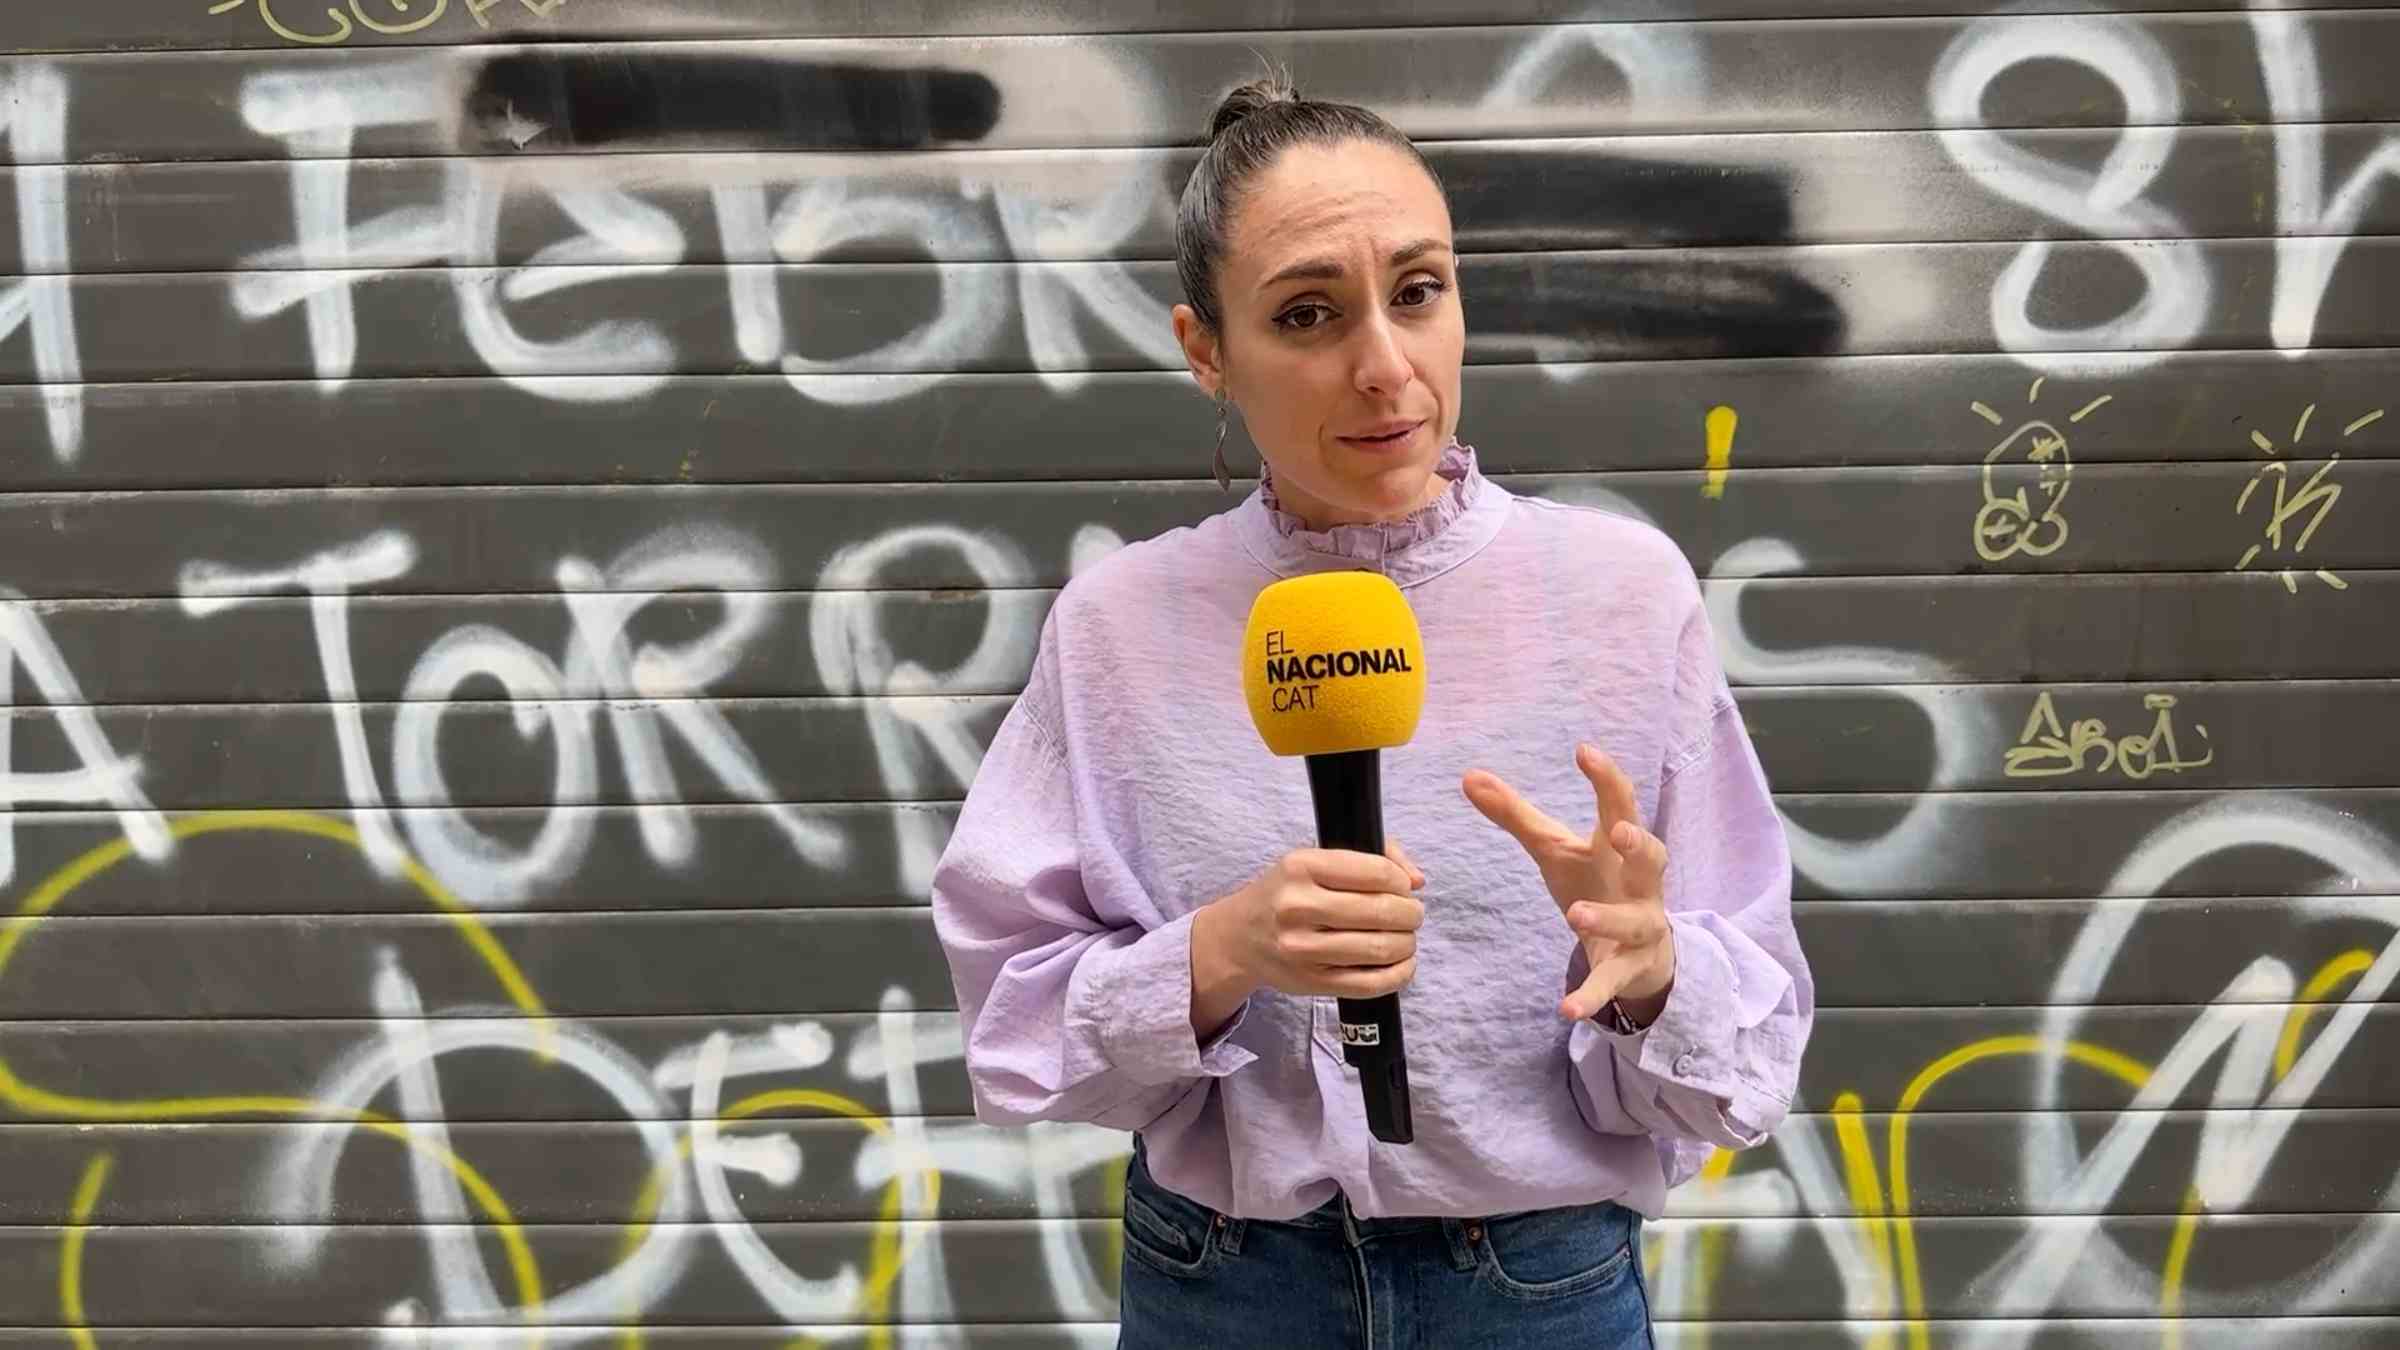 "Saldremos de mierda hasta arriba". La Barcelona sucia, el segundo tema más preocupante | VÍDEO